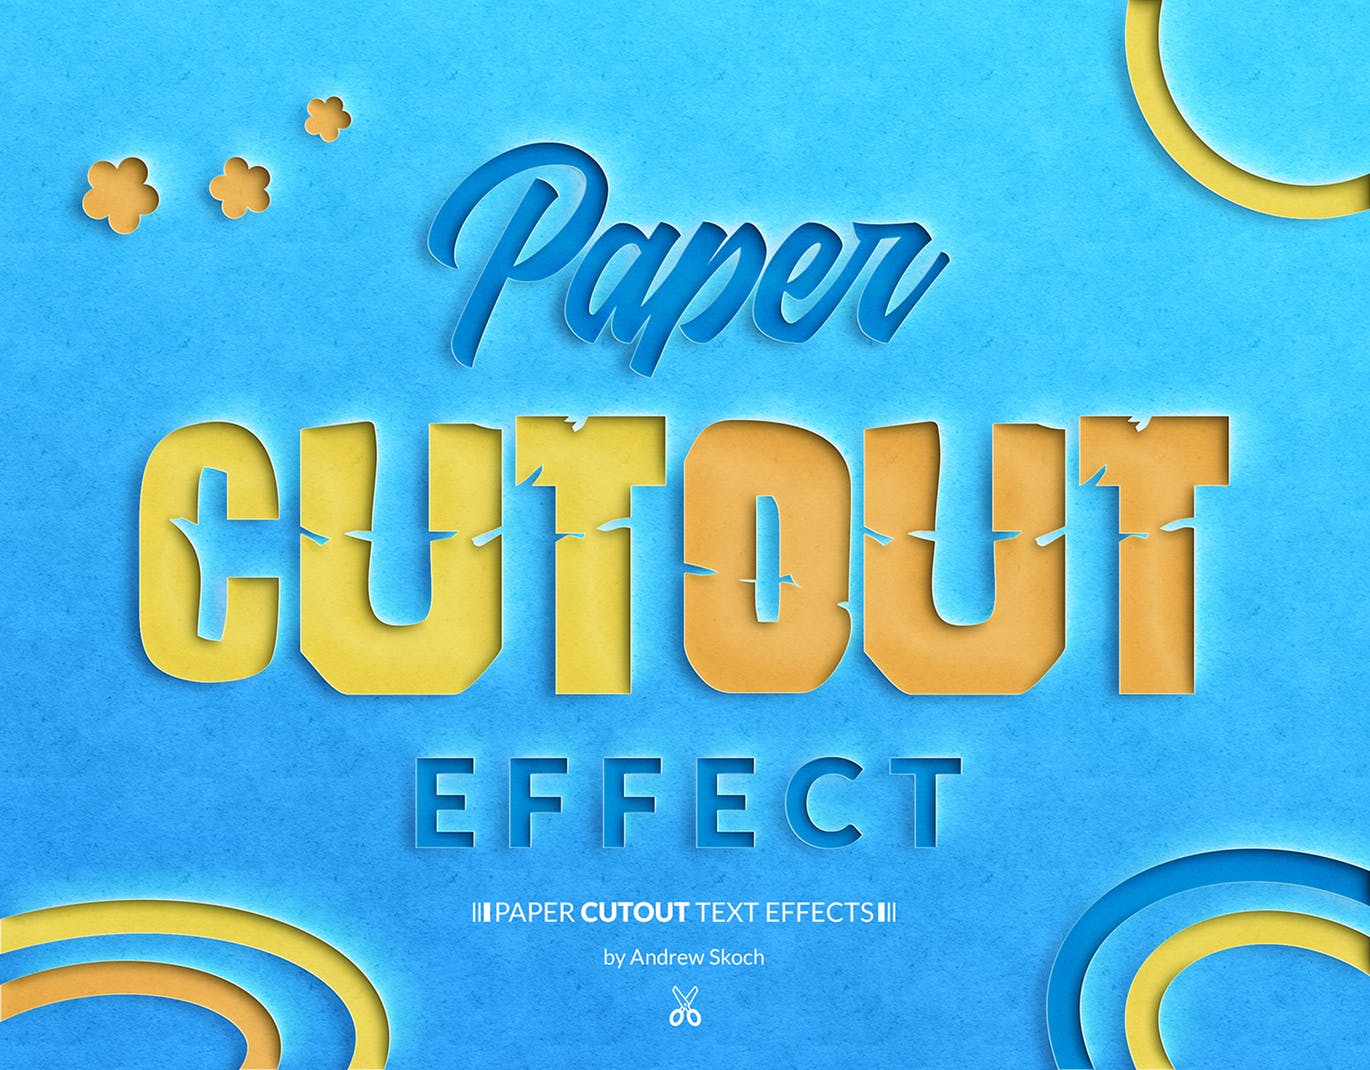 纸张镂空效果的字体设计图层样式下载